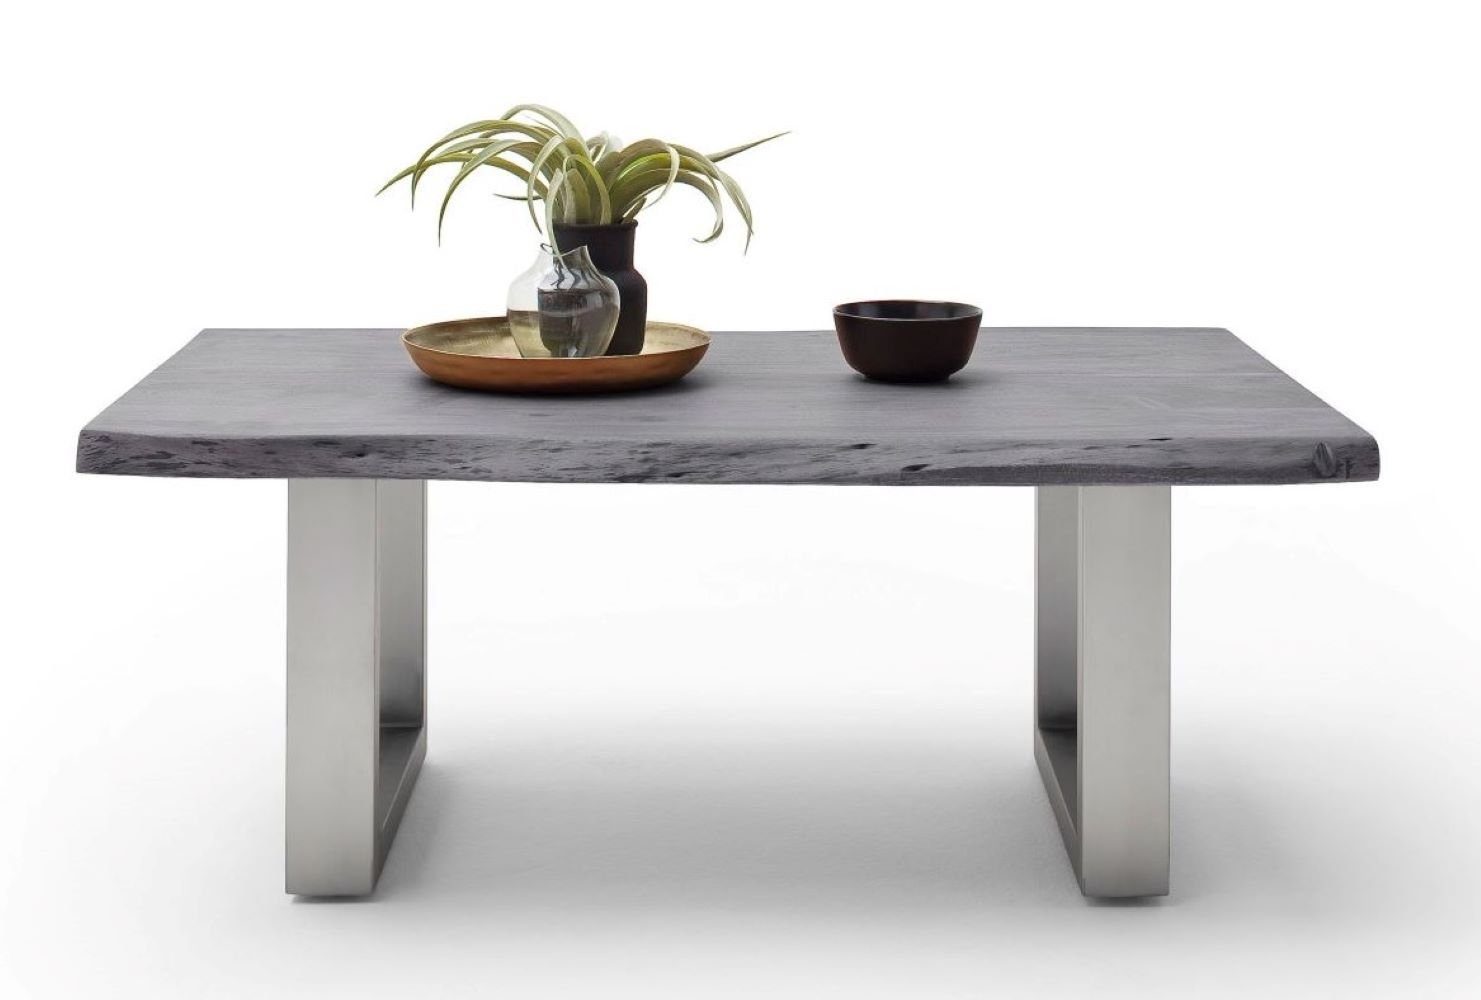 MCA furniture Cartagen, Akazie-massiv grau Baumkante Couchtisch U-Form rechteckig